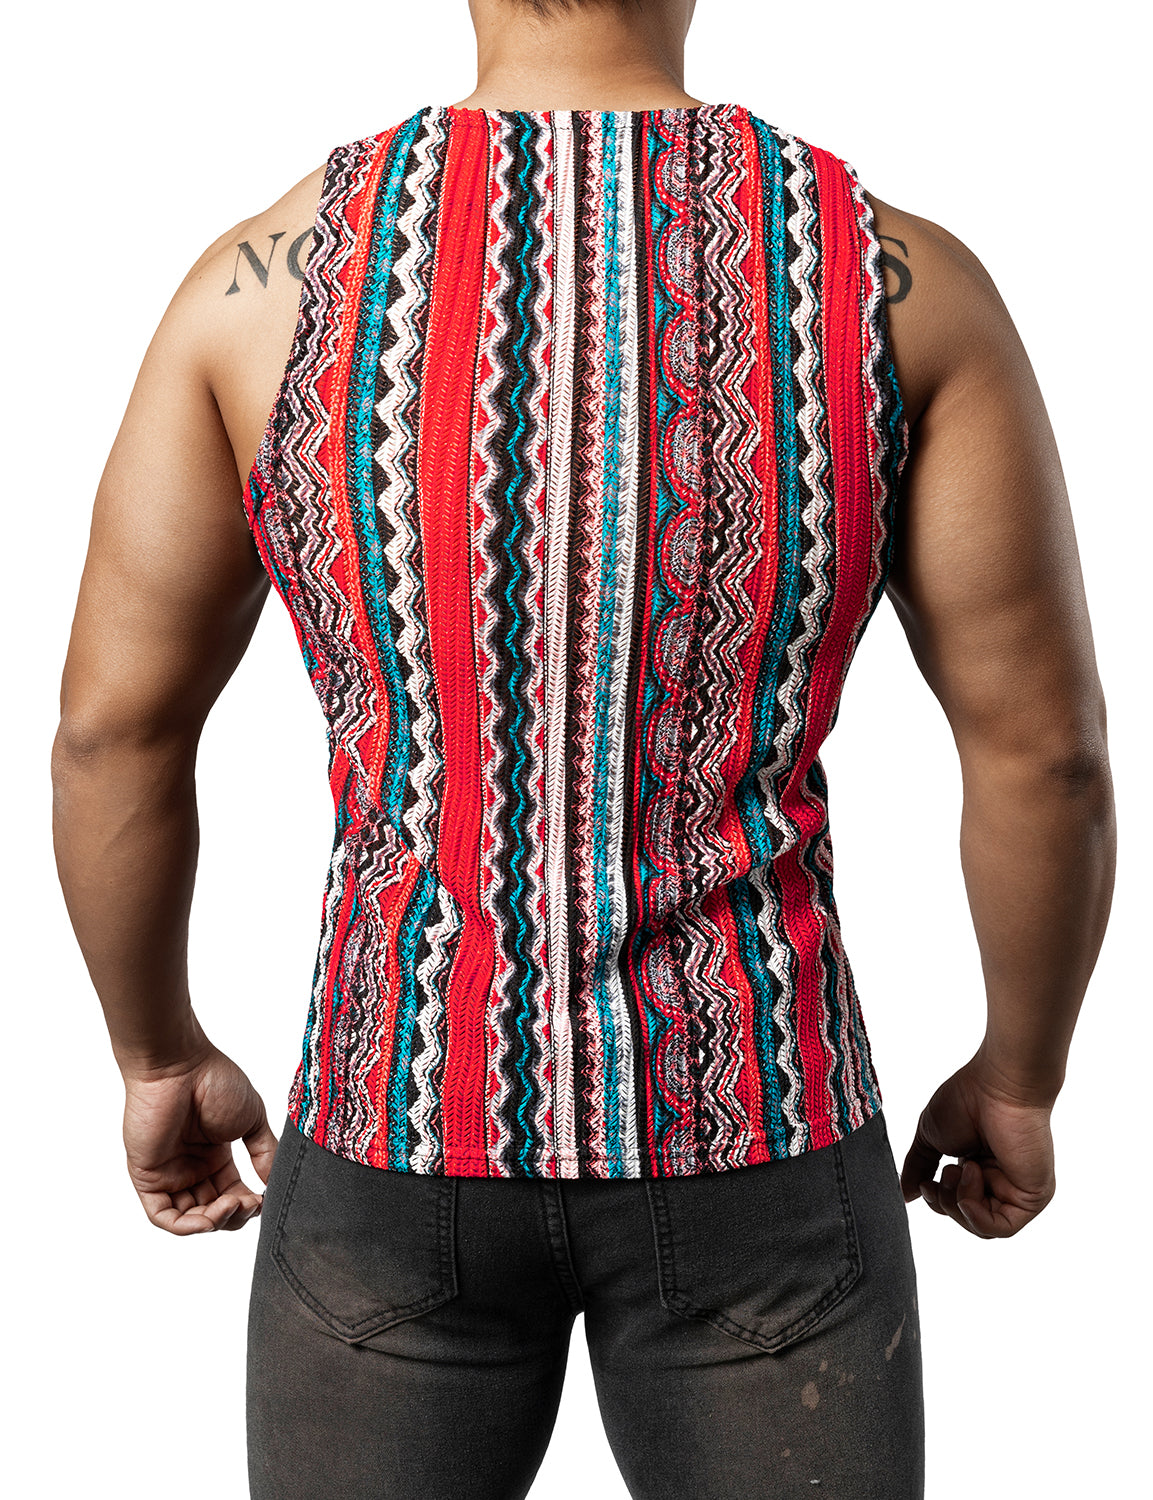 JOGAL Mens Boho Summer Tank Top Sleeveless Muscle Mesh Shirt